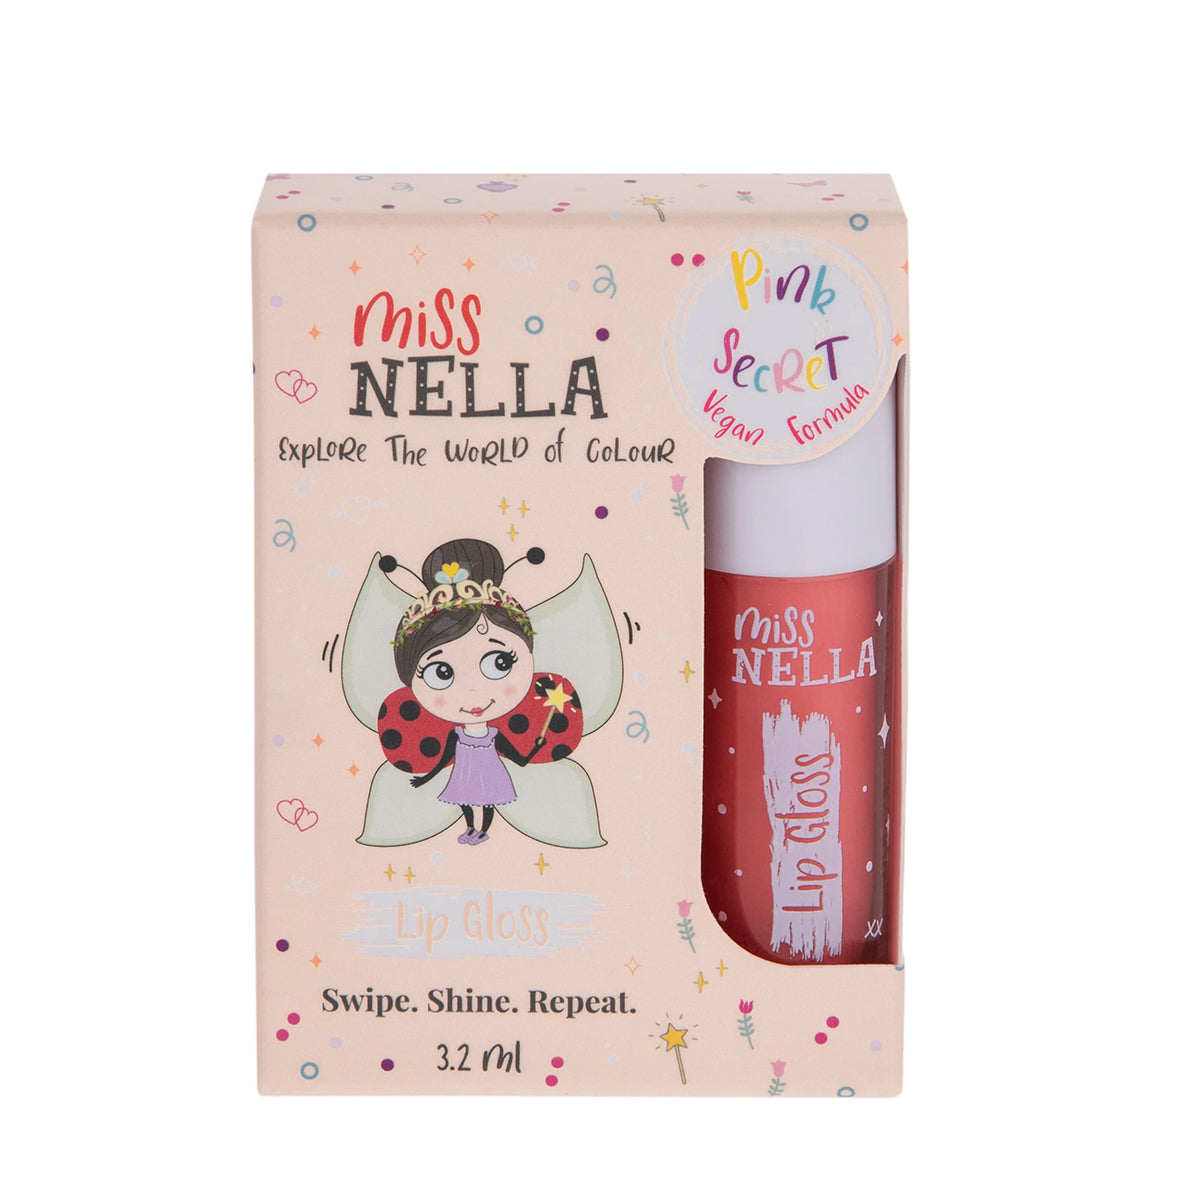 De lipgloss pink secret van Miss Nella mag niet ontbreken! Plakt niet, zorgt voor hydratatie, geeft glans en kleur. Vrij van chemicaliën dus geschikt voor kinderen. Verkrijgbaar in verschillende kleuren. VanZus